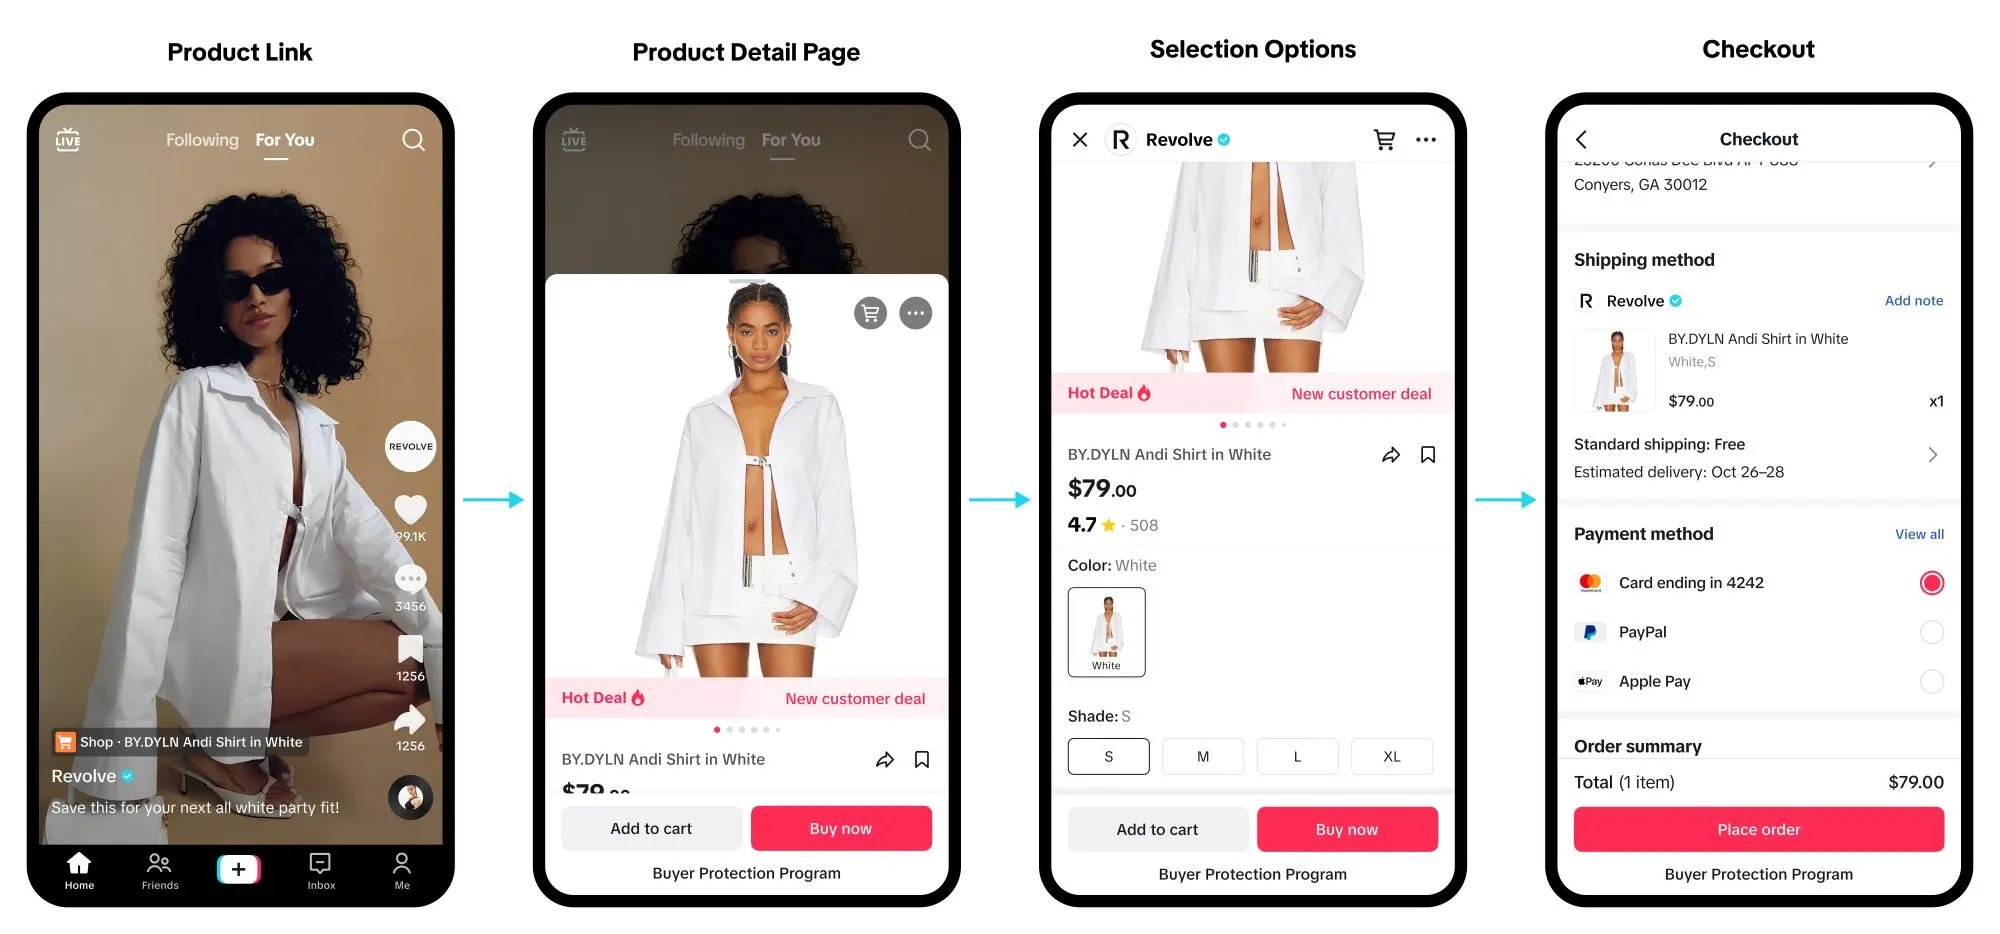 Imagen de la tienda de TikTok que incluye enlace del producto, página de detalles del producto, opciones de selección y pago